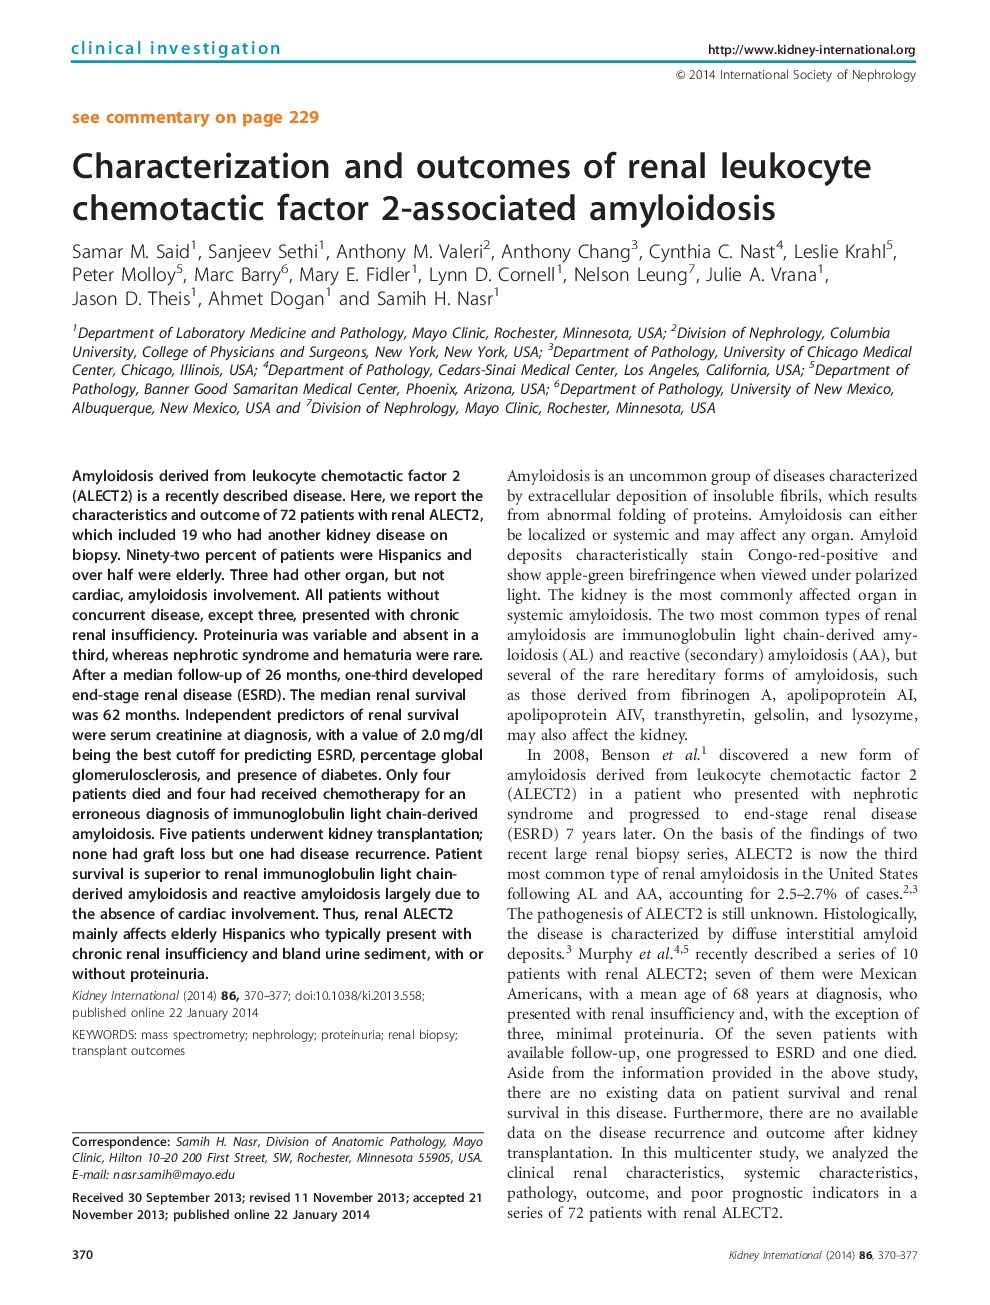 مشخصات و نتایج آمیلوئیدوز وابسته به کمیتوتاکتیک کلیوی لکوسیت 2 